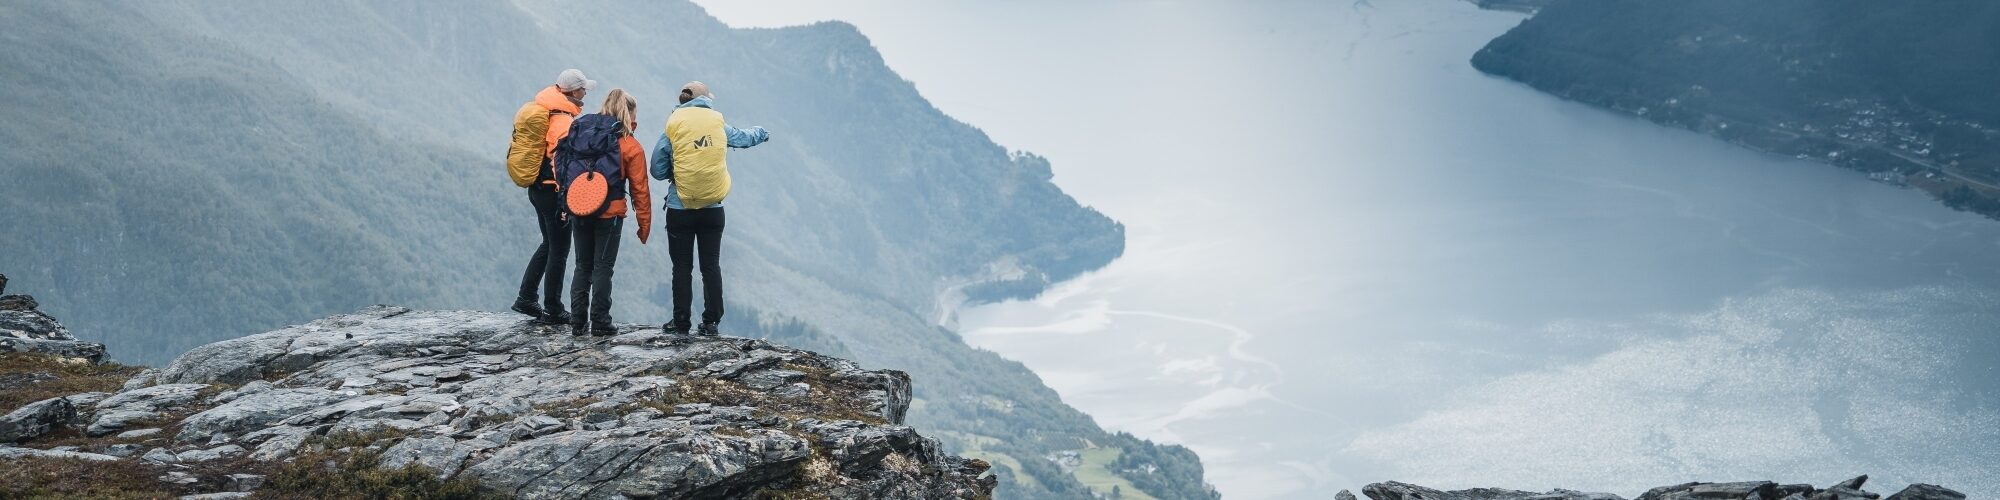 Drei Personen auf einem Berg mit Blick auf den Fjord